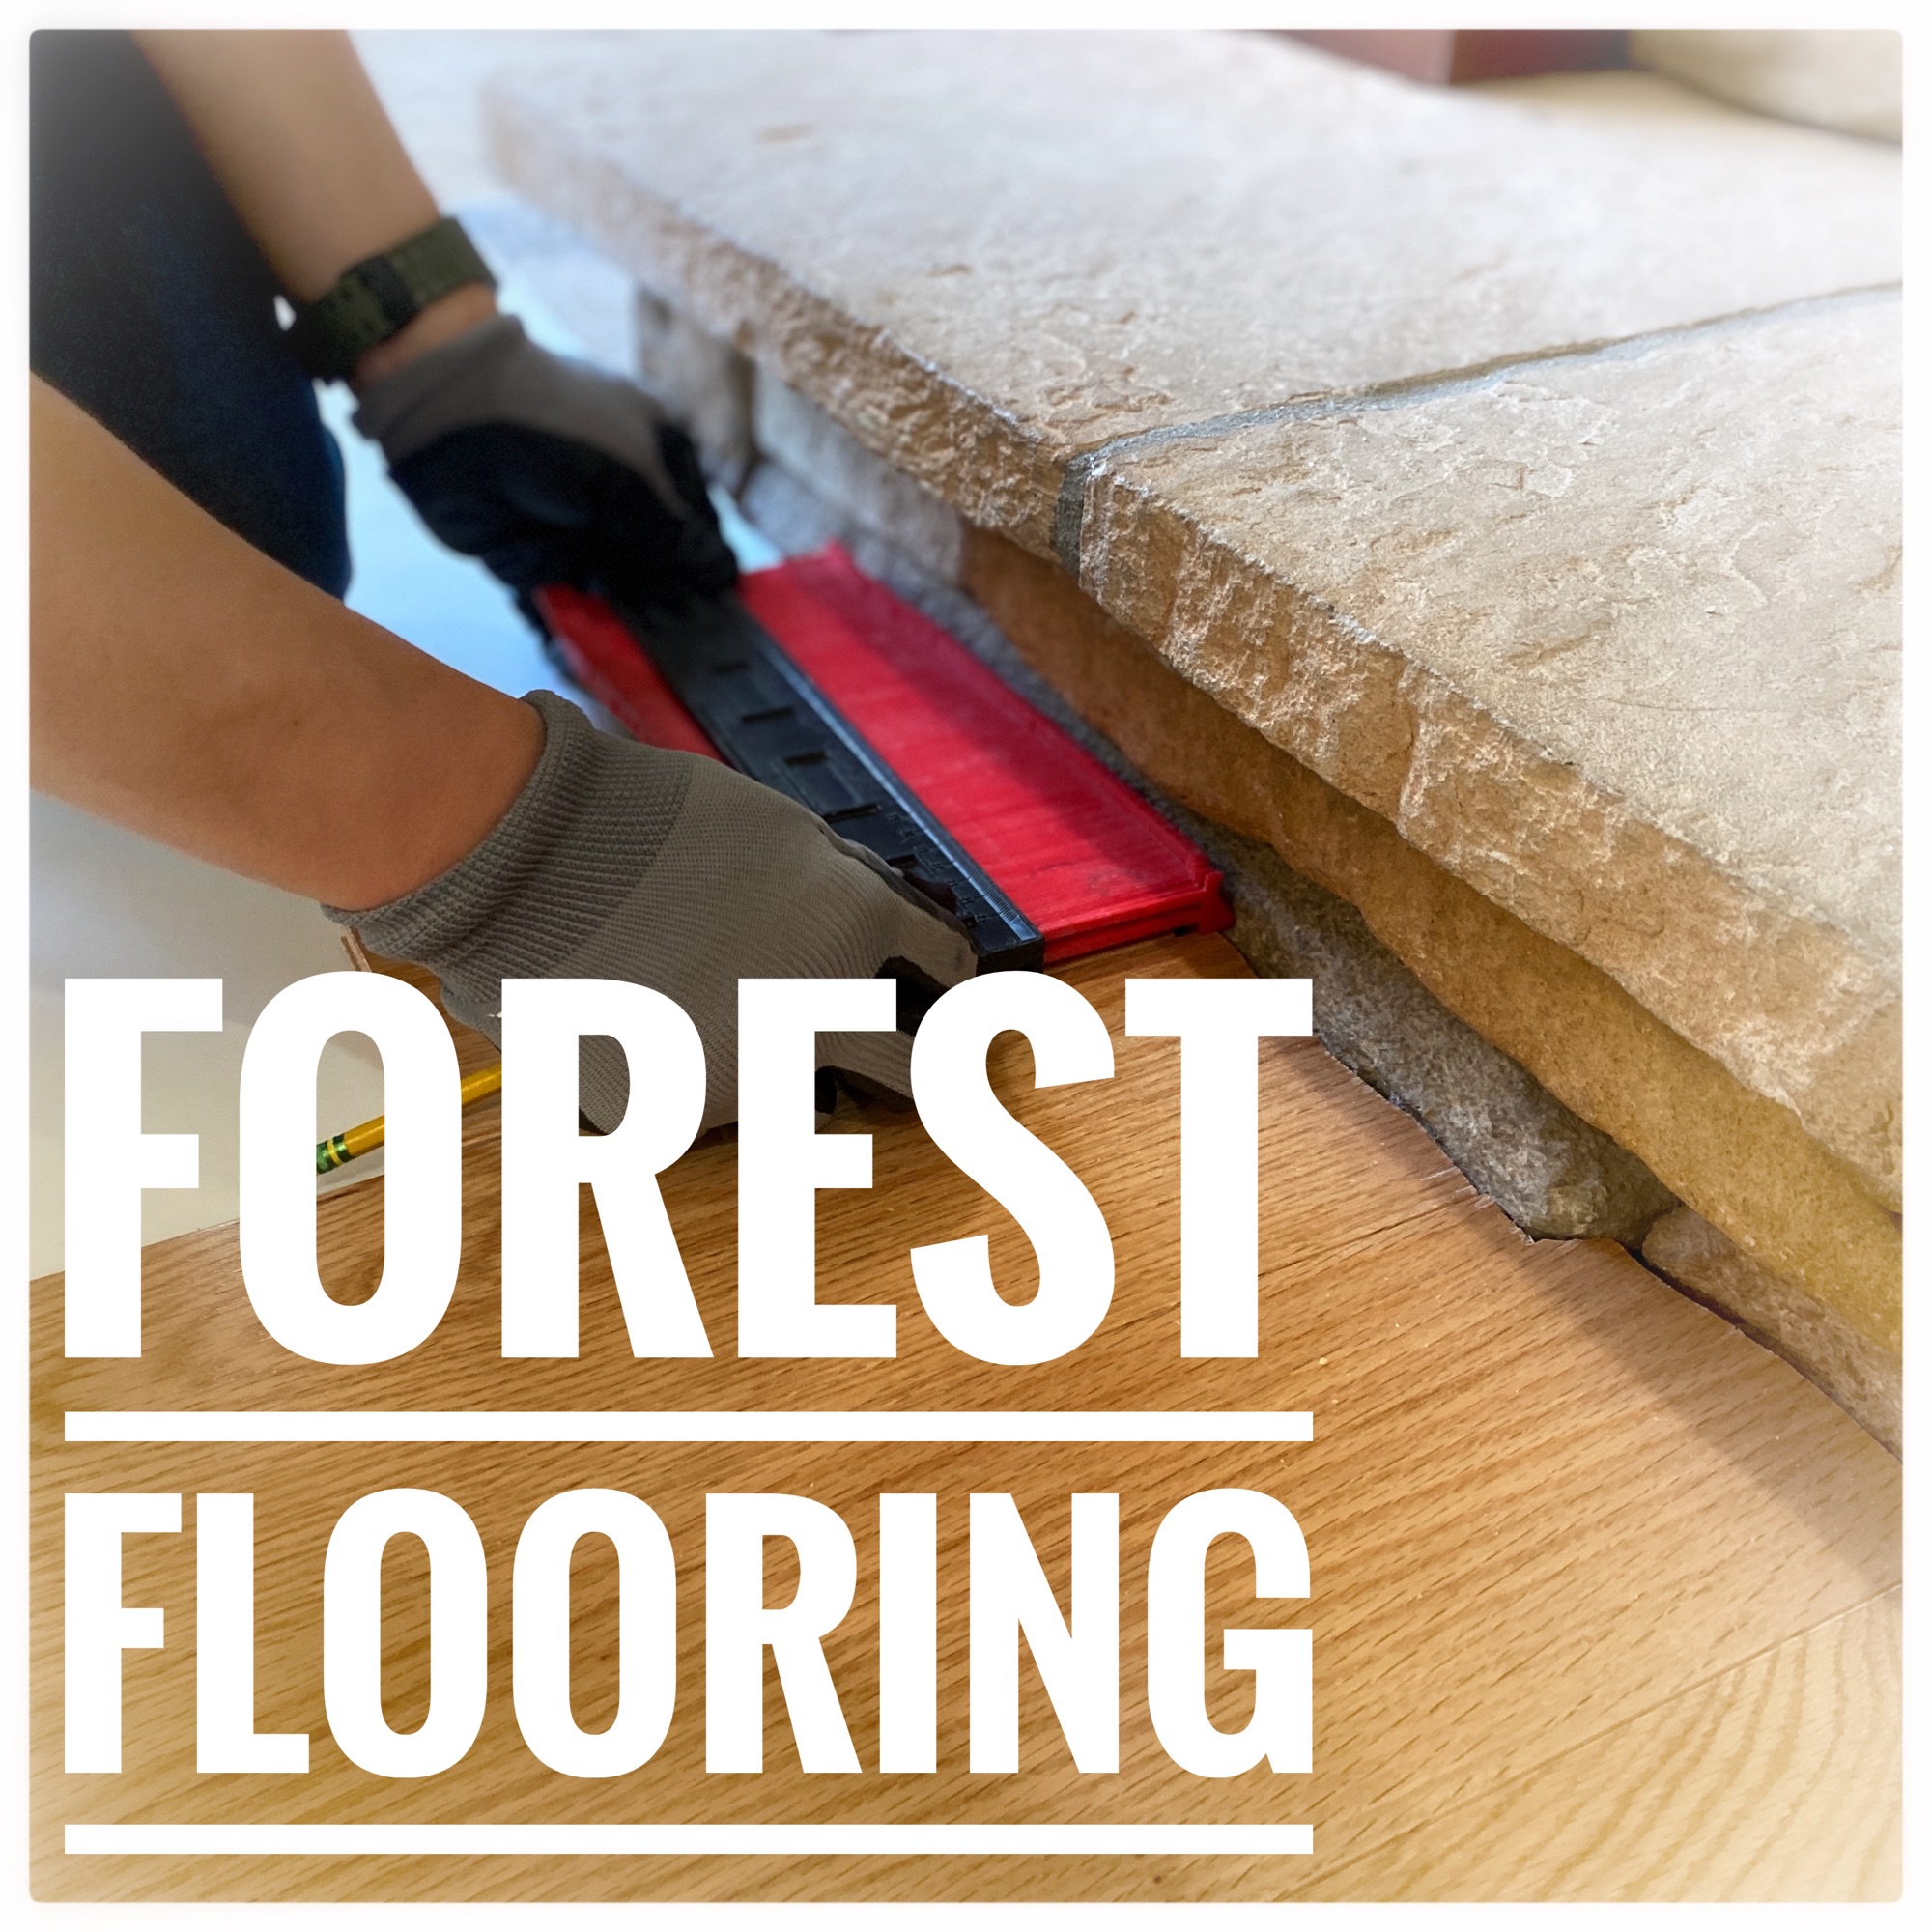 Forest Flooring, LLC Logo